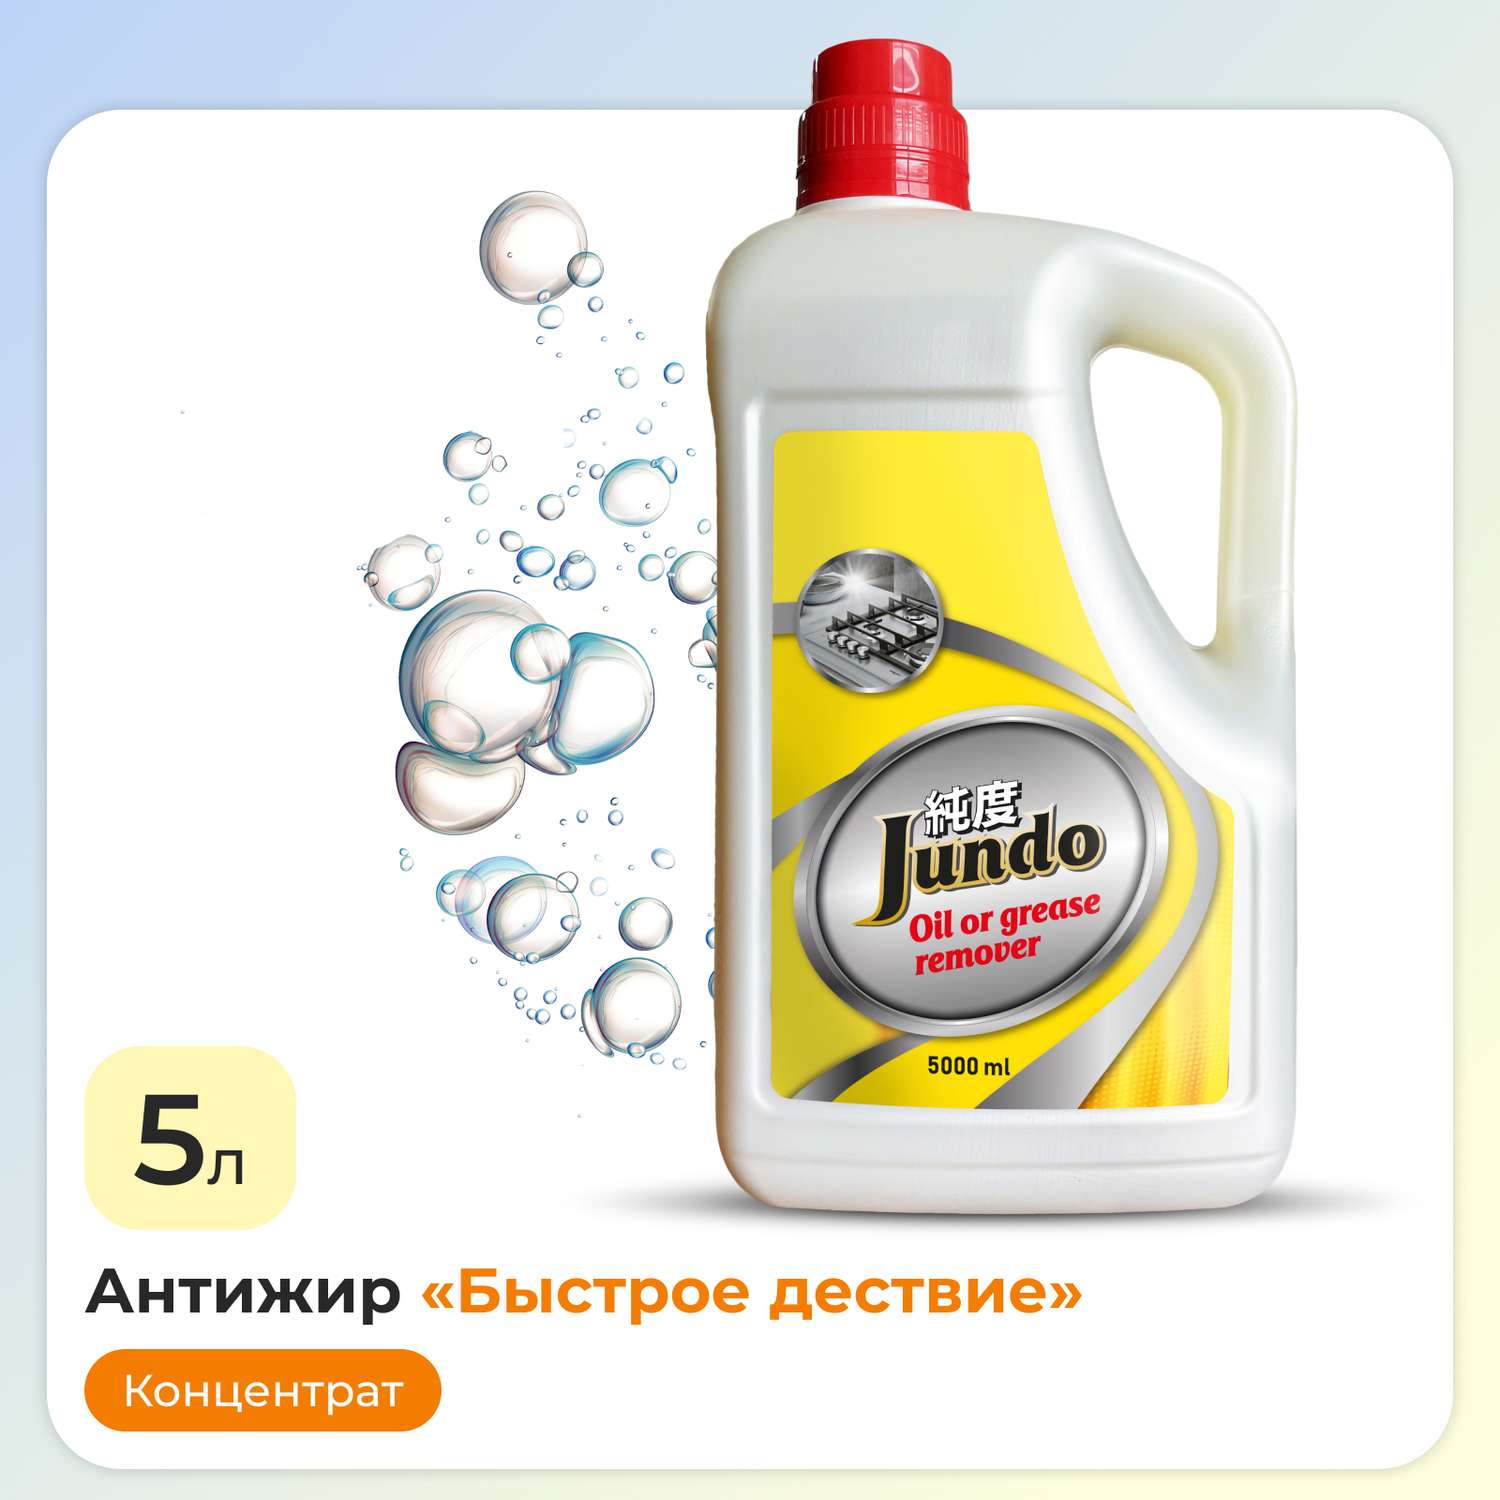 Жироудалитель Jundo Oil of grease remover 5 л концентрат для плит духовок вытяжек и посуды - фото 1